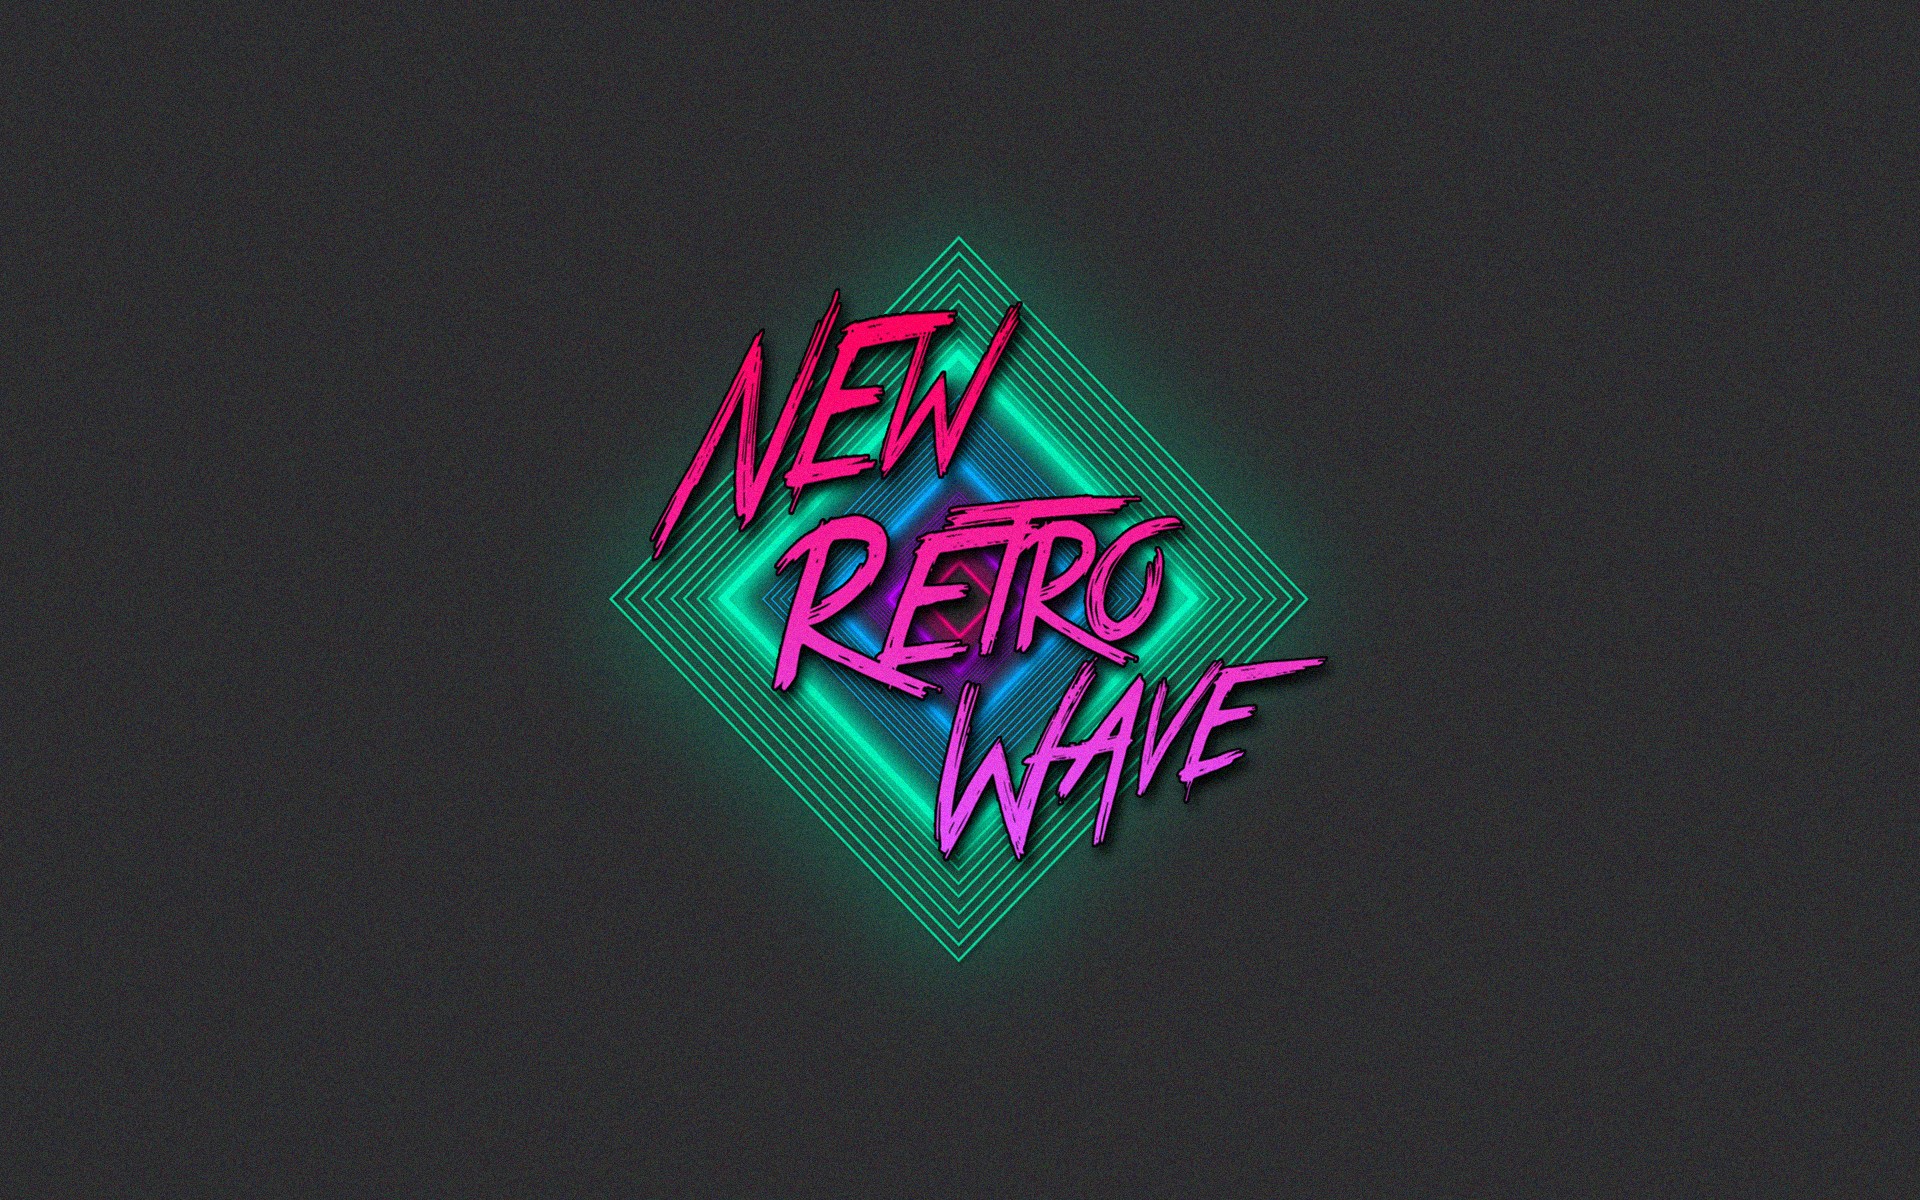 General 1920x1200 retro games vintage New Retro Wave neon 1980s synthwave dark background digital art artwork